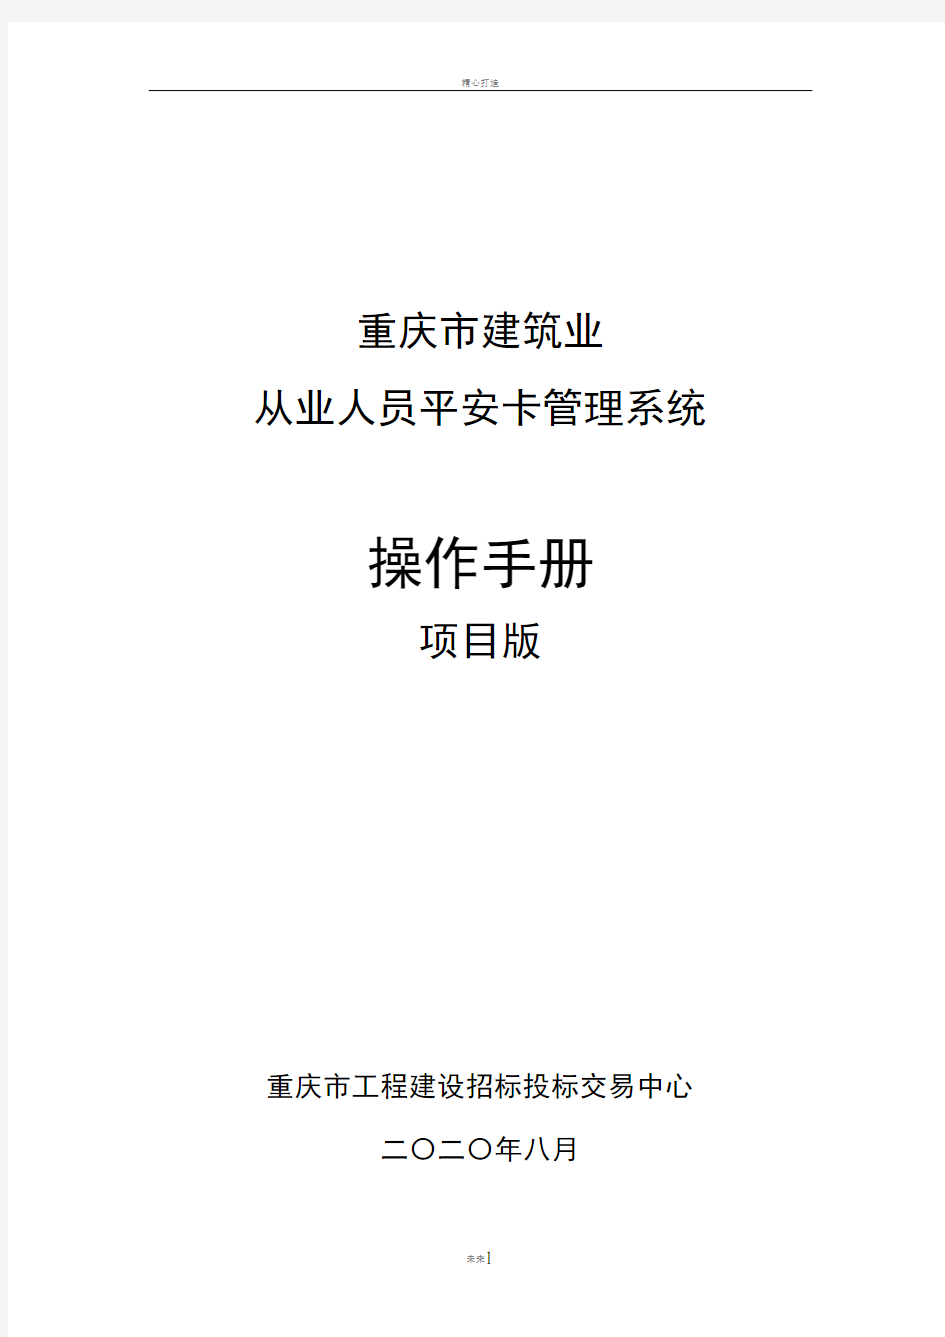 重庆市建筑业从业人员平安卡管理系统操作手册--项目版